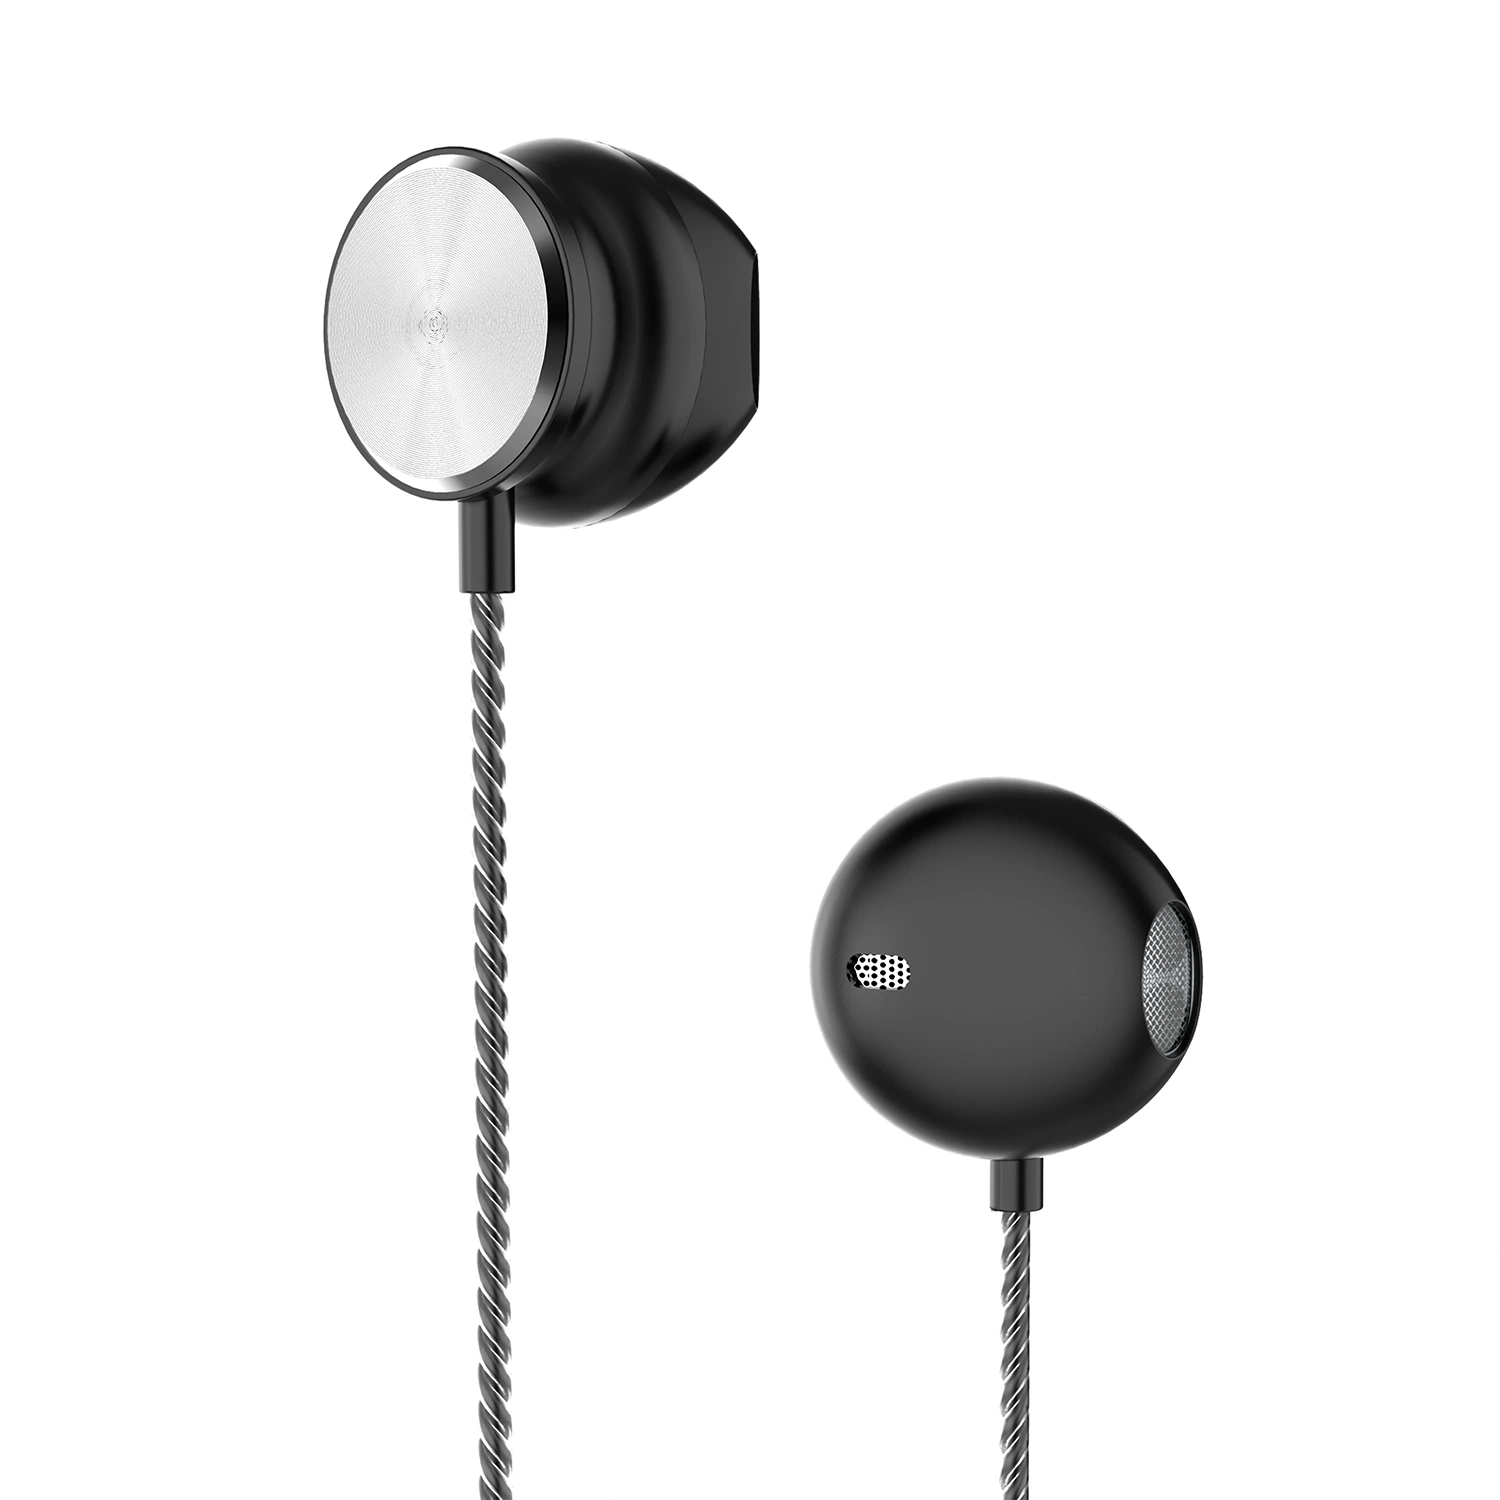 Écouteurs filaires DC écouteurs 3,5 mm avec un microphone pour téléphone mobile